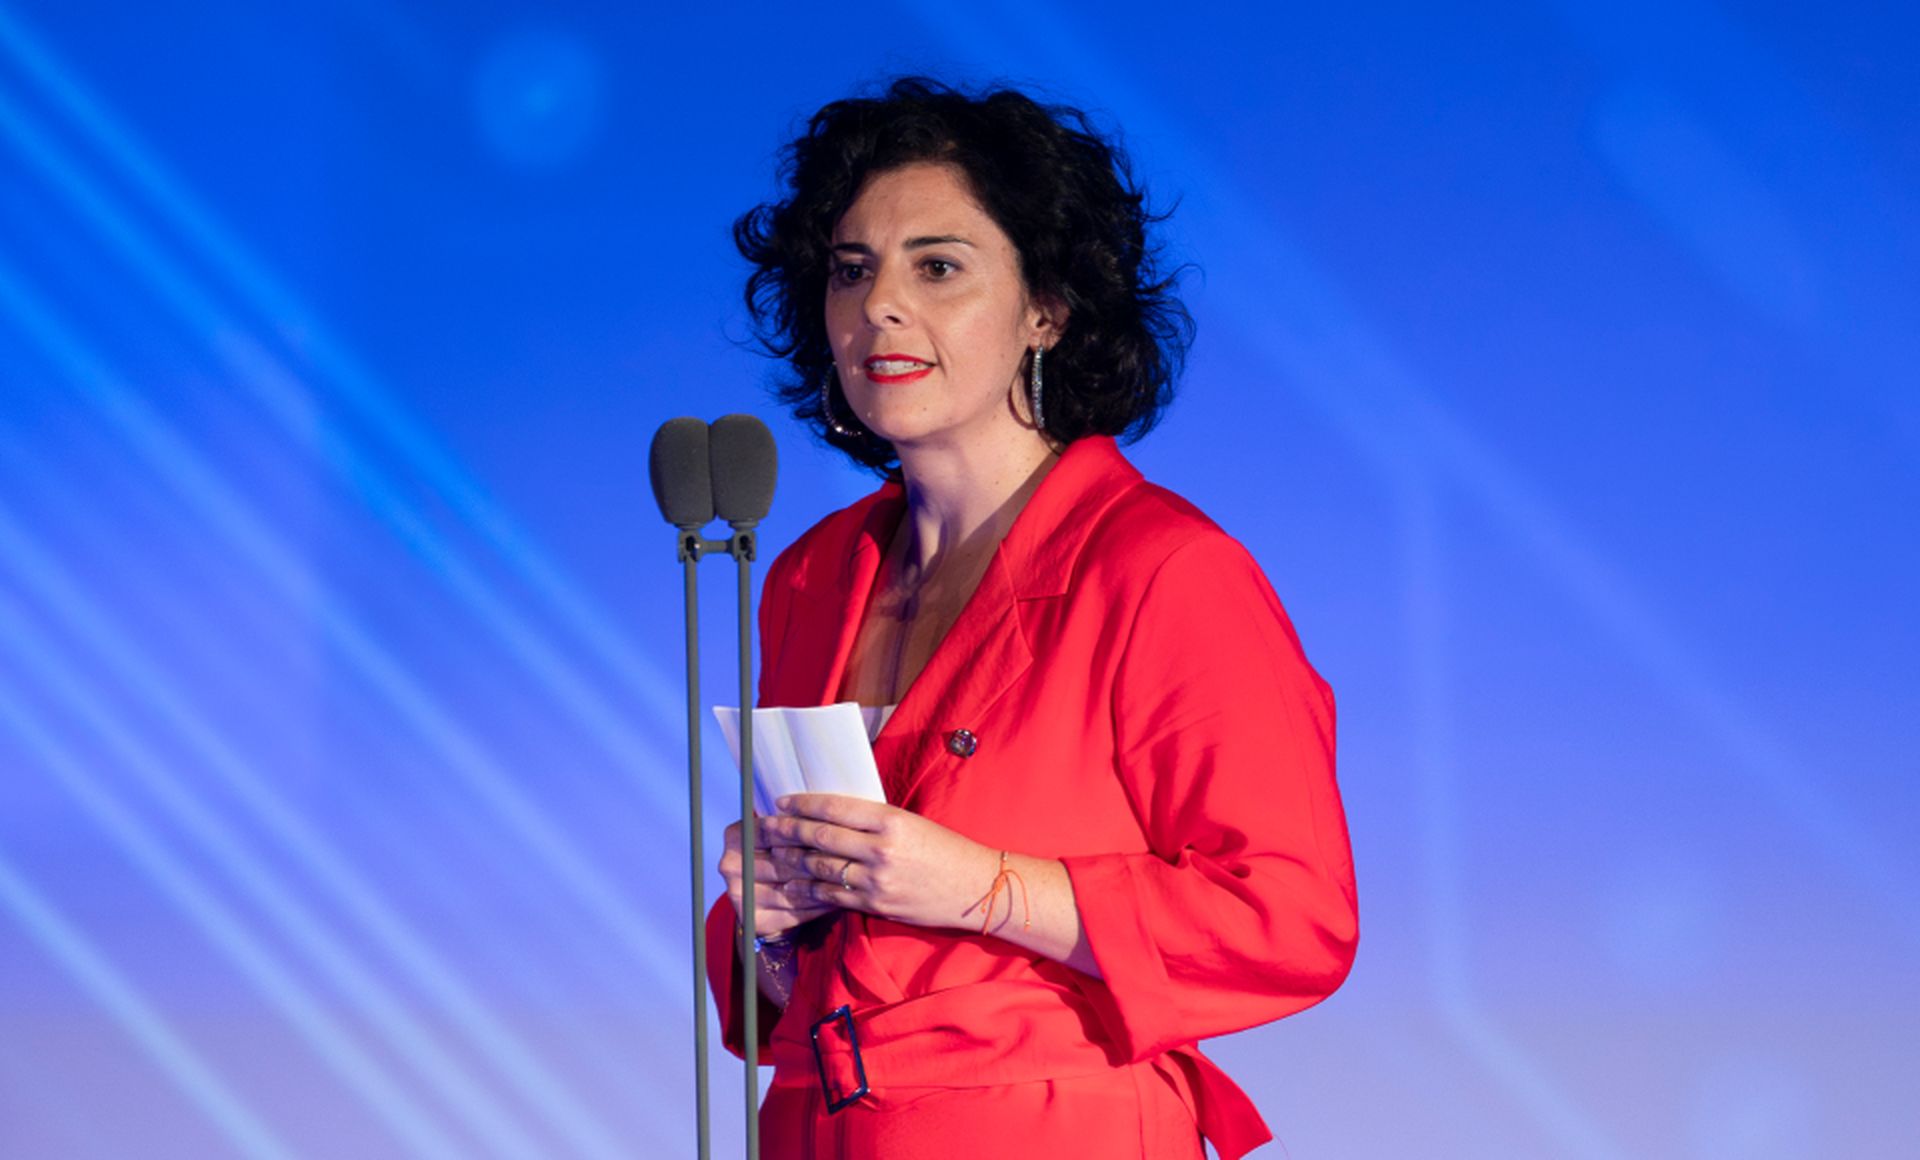 Yovanna Blanco, Editor-in-Chief de Business Insider, presentó el último galardón de la gala.